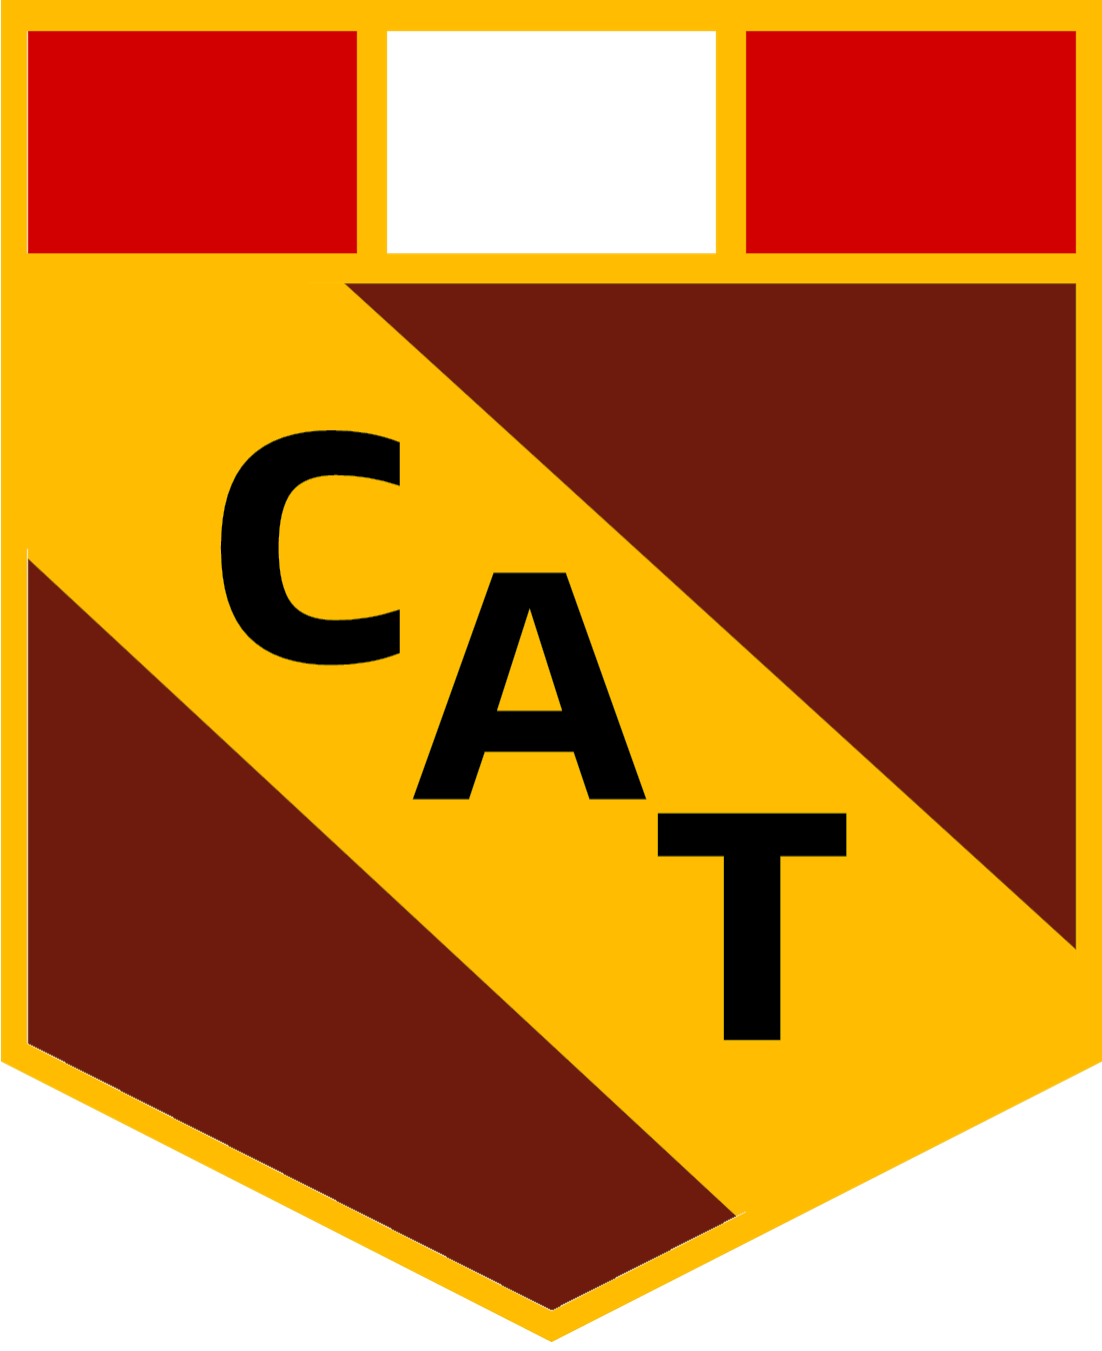 Torino Futebol Clube – Wikipédia, a enciclopédia livre